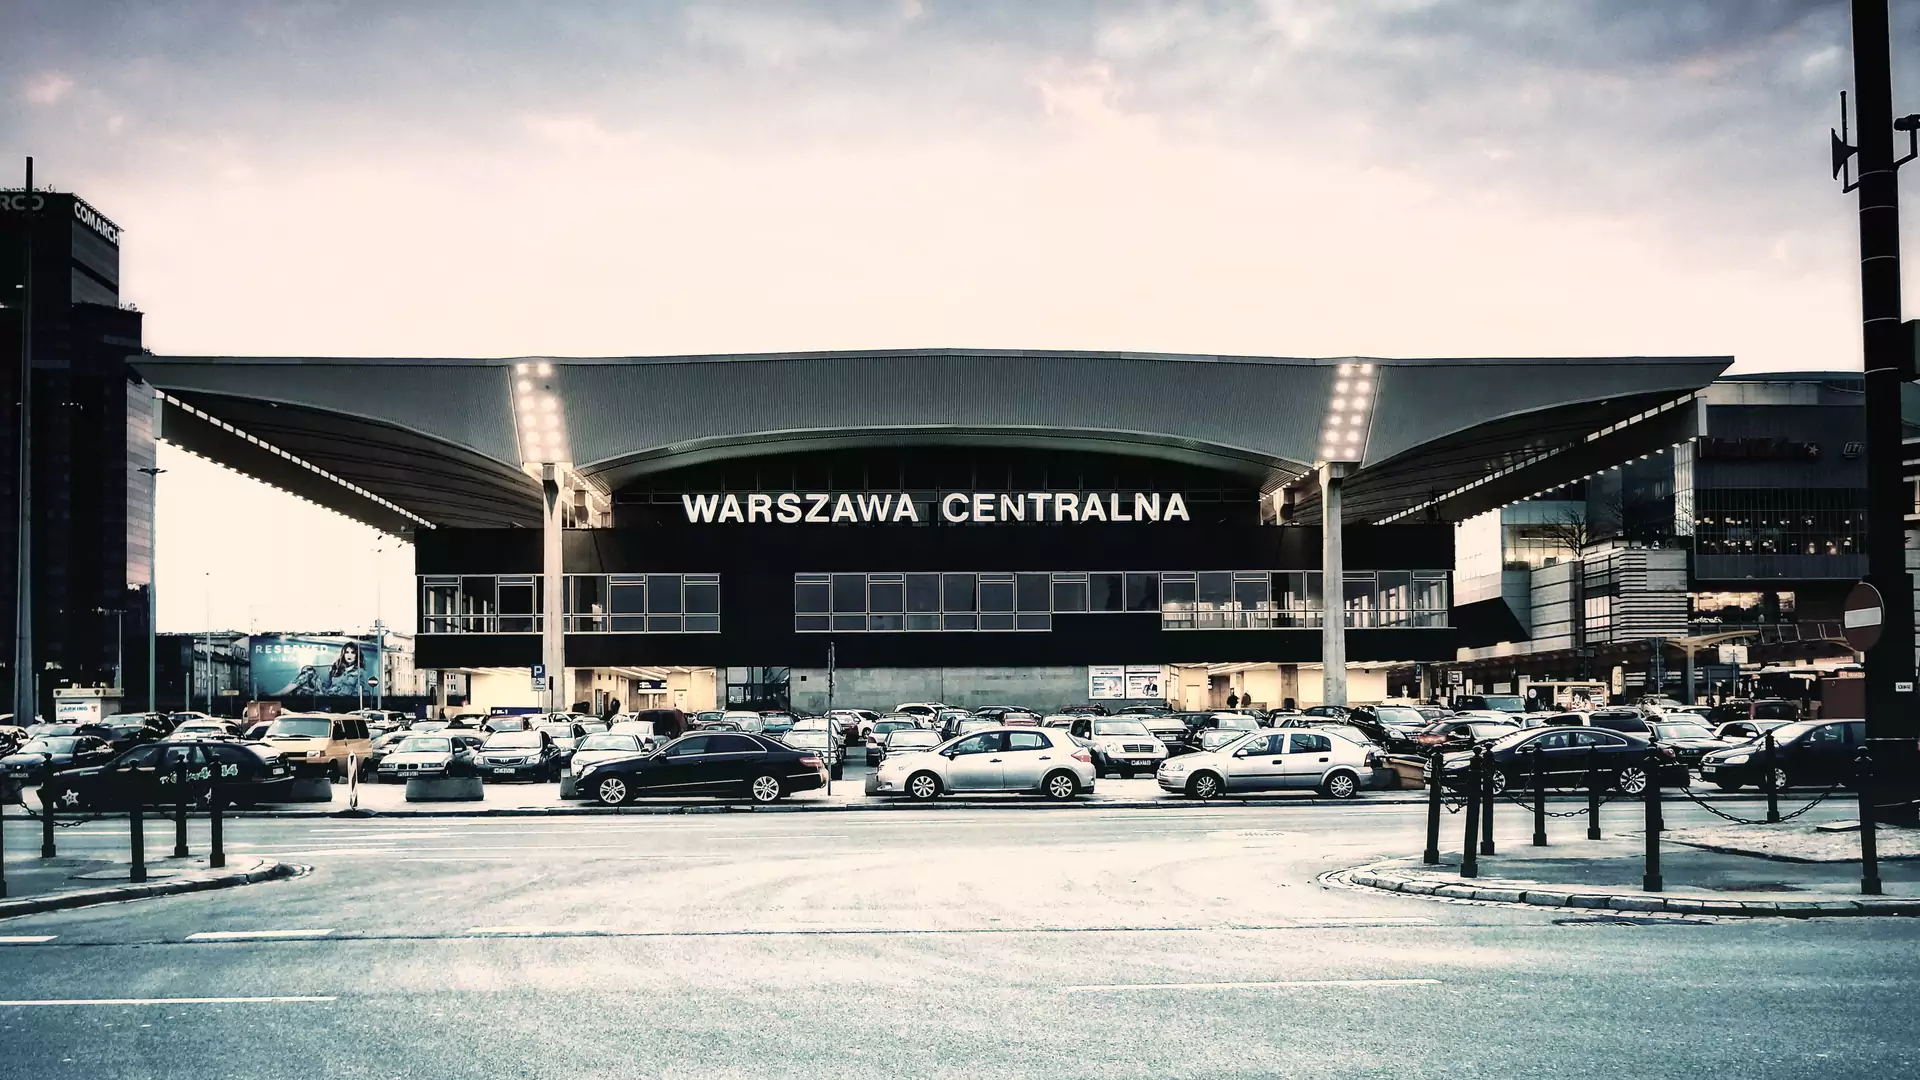 Symbol Warszawy stał się zabytkiem, czy będzie oburzenie PKP?